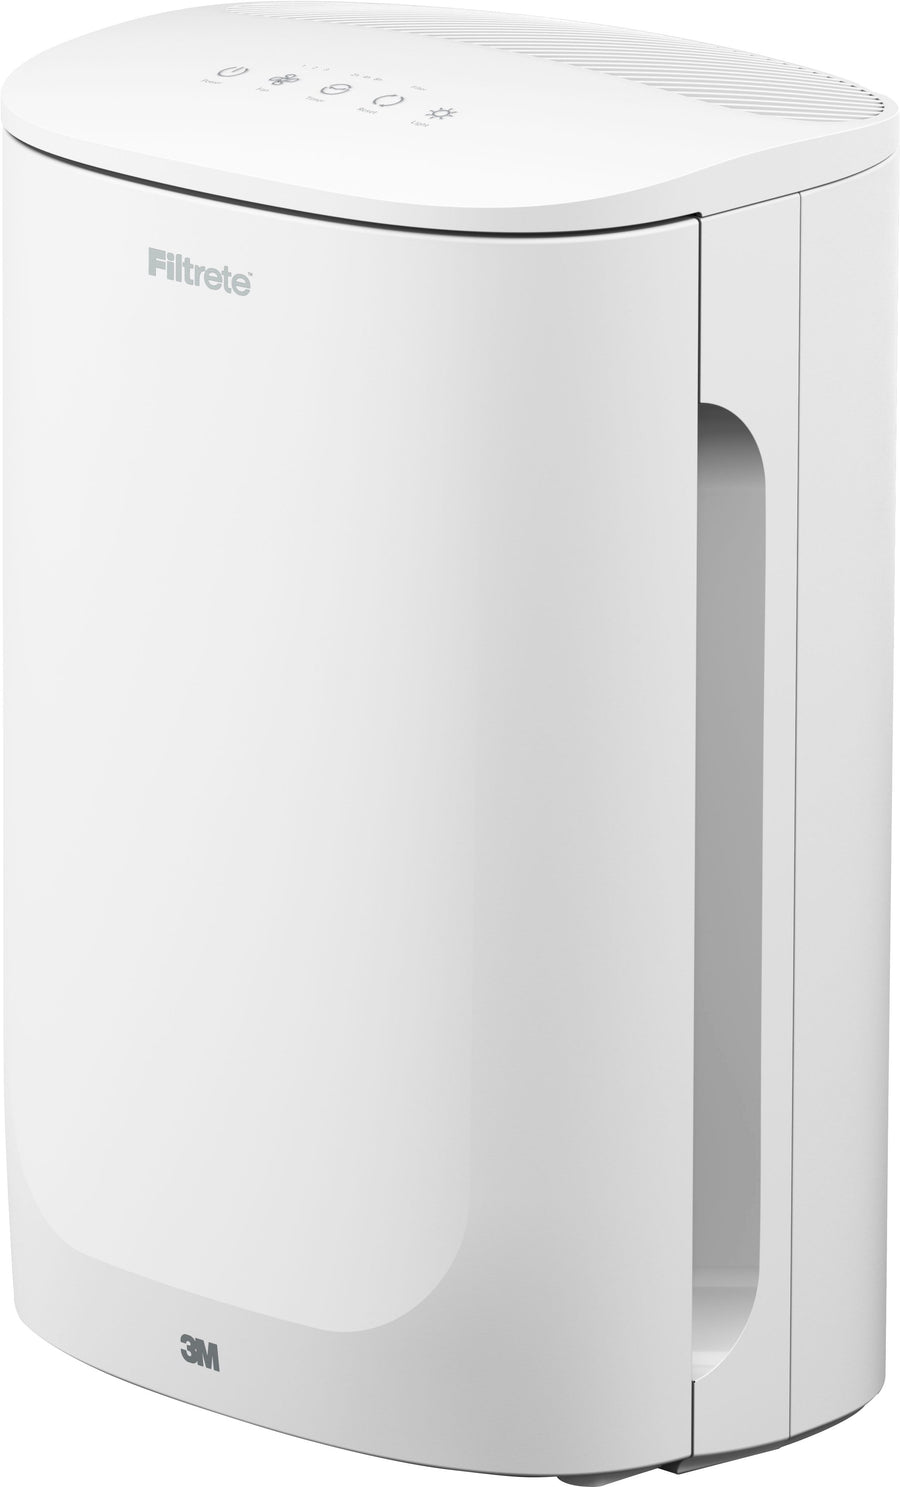 Filtrete - 150 Sq. Ft. True HEPA Air Purifier - White_0